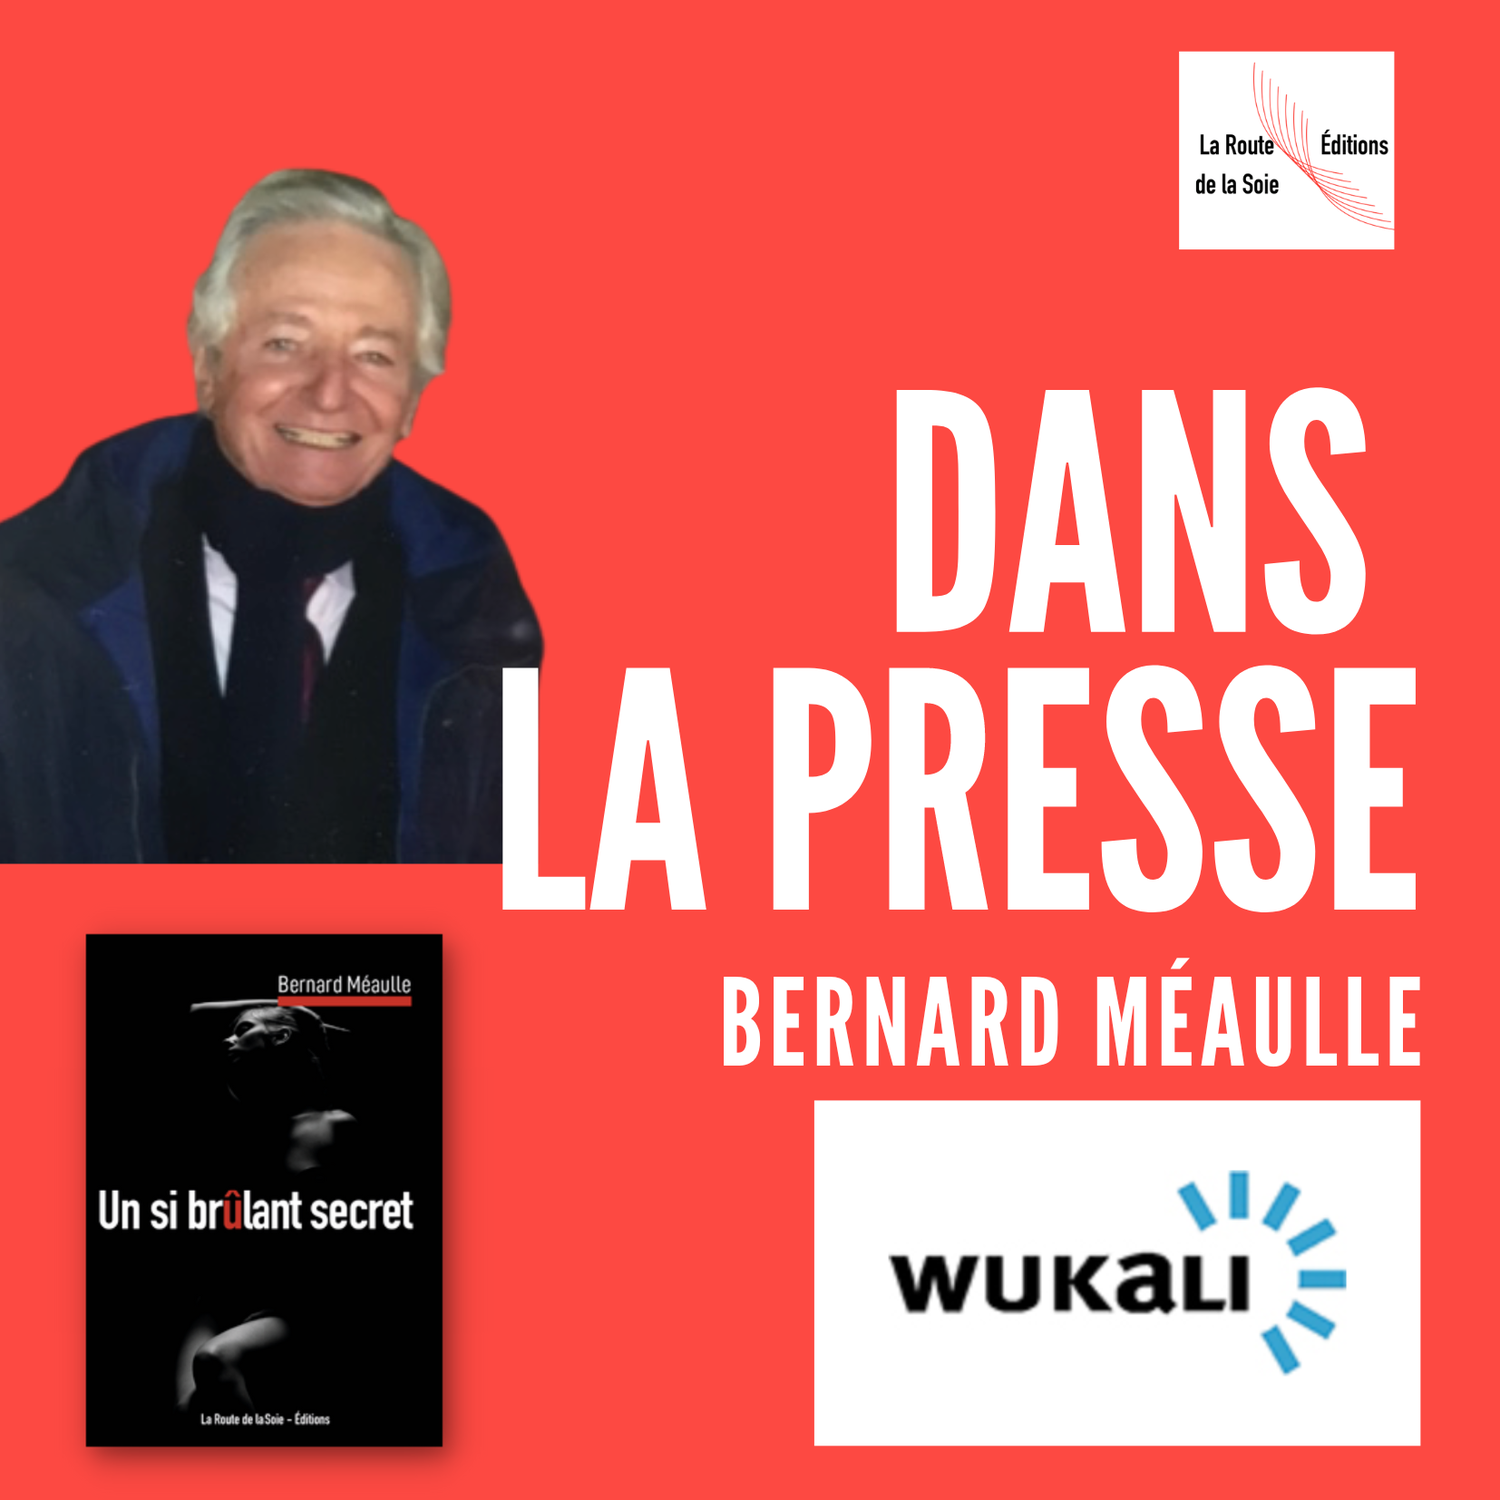 Bernard Méaulle lu par Wukali